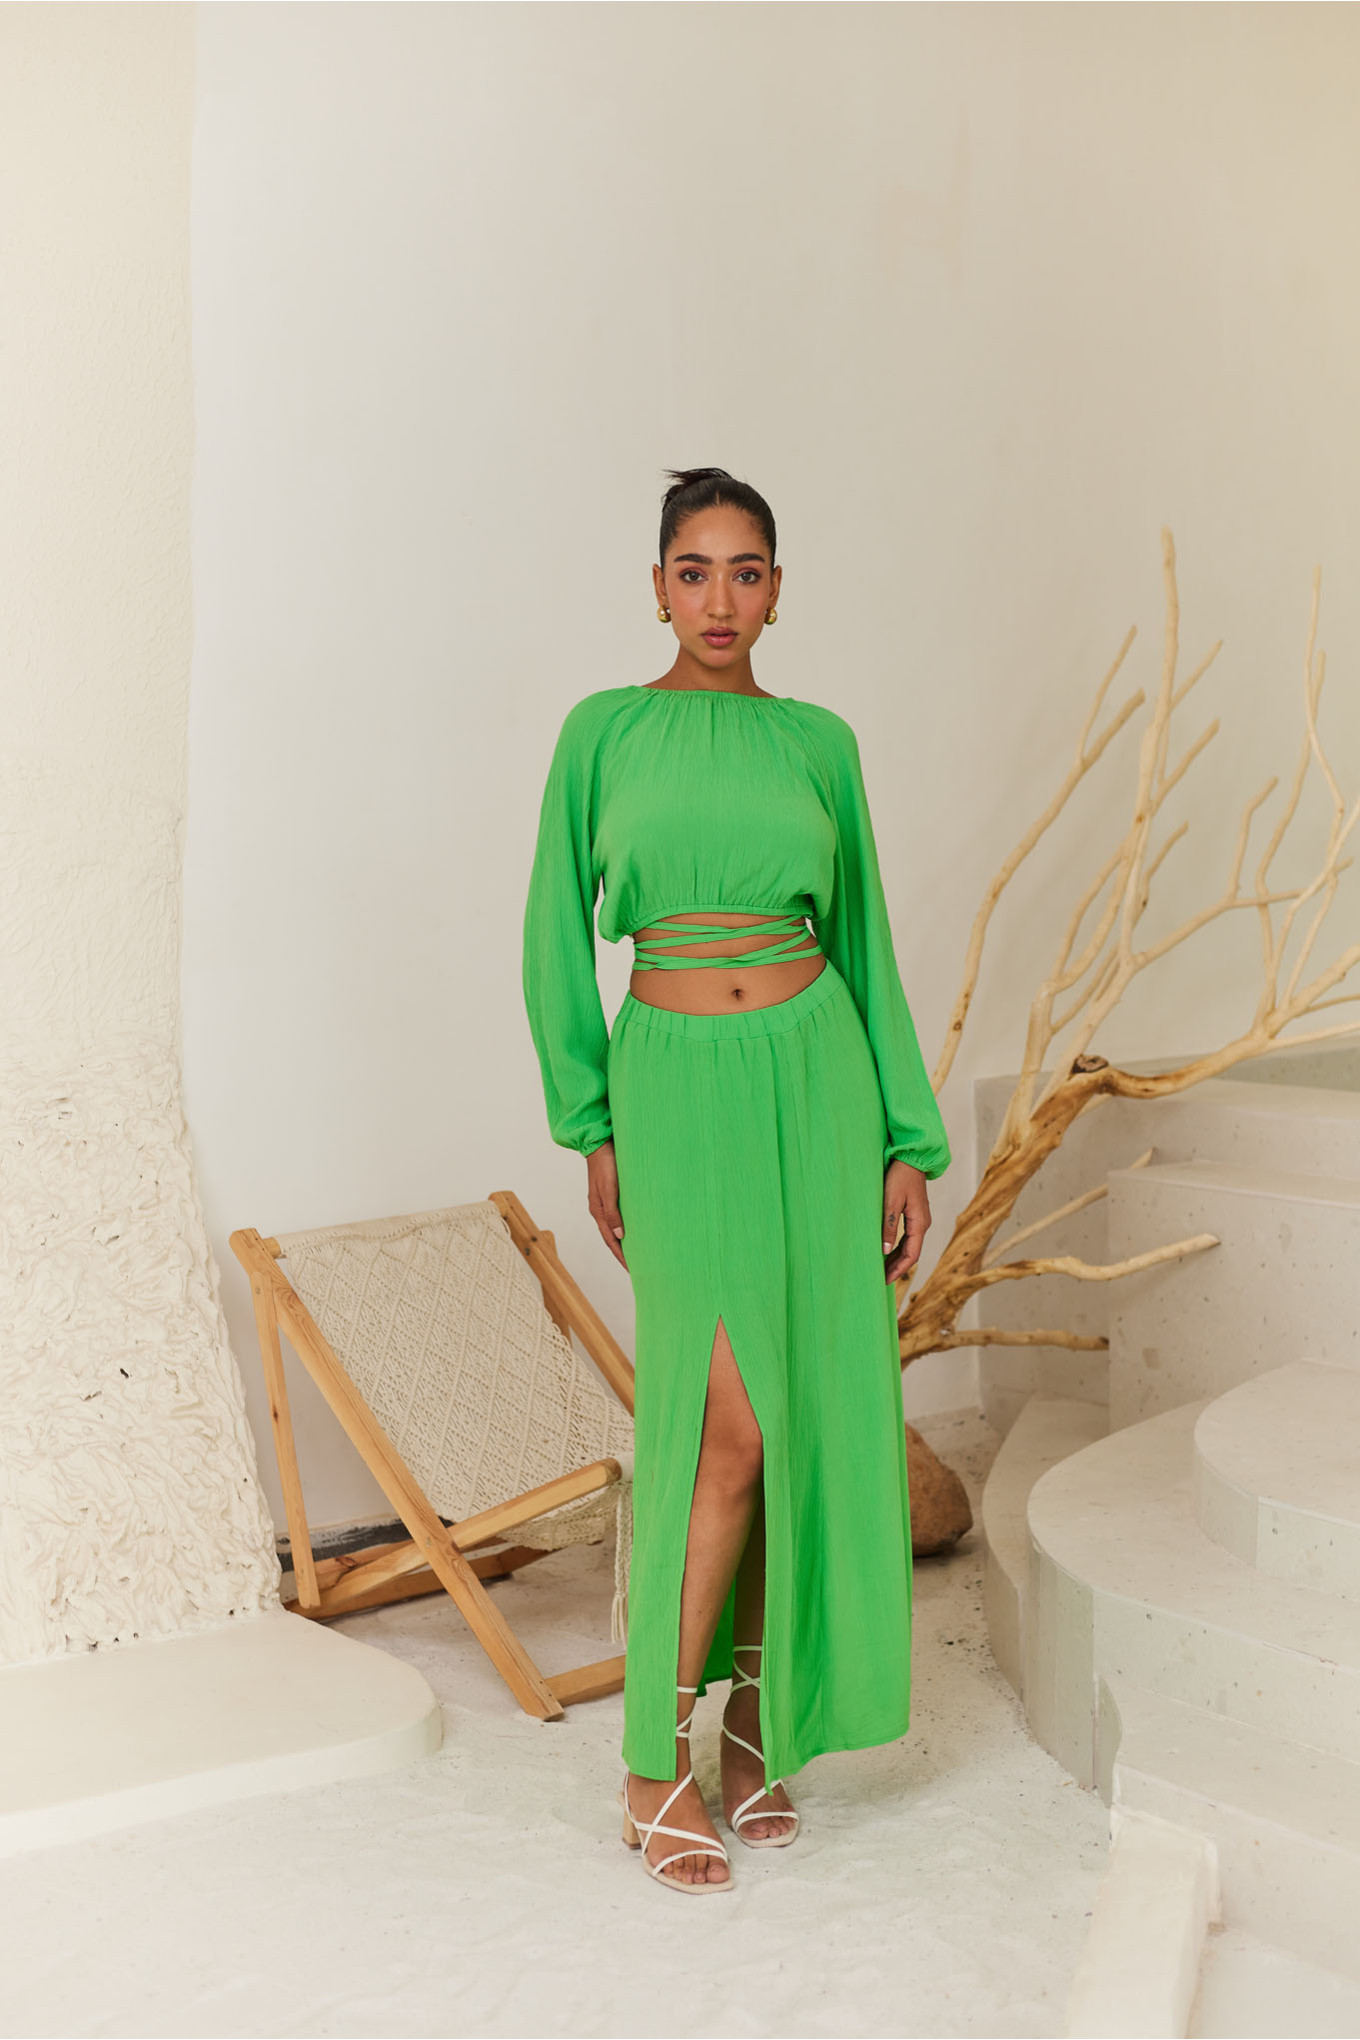 Buy Rare Green ALine Midi Skirt for Womens Online  Tata CLiQ